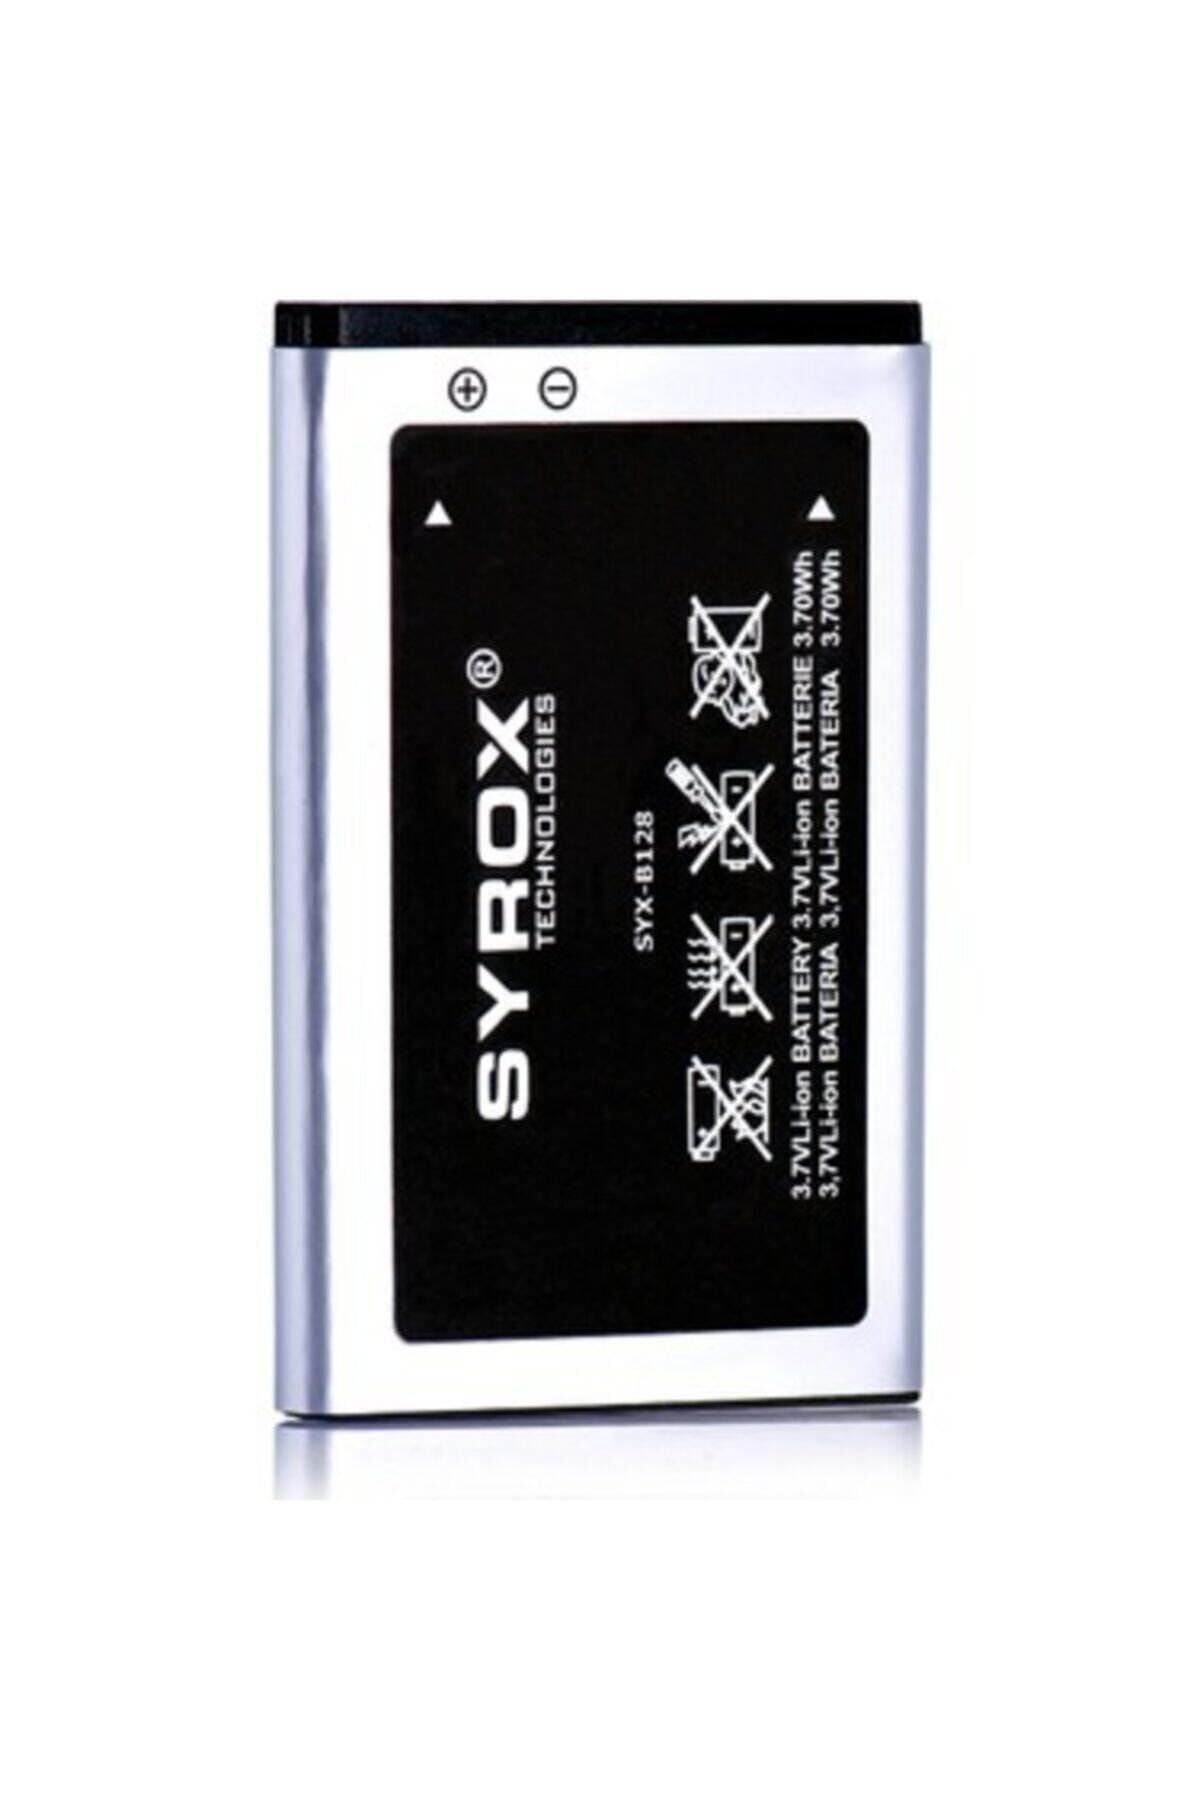 Syrox Samsung L700 Batarya - Syx-b128